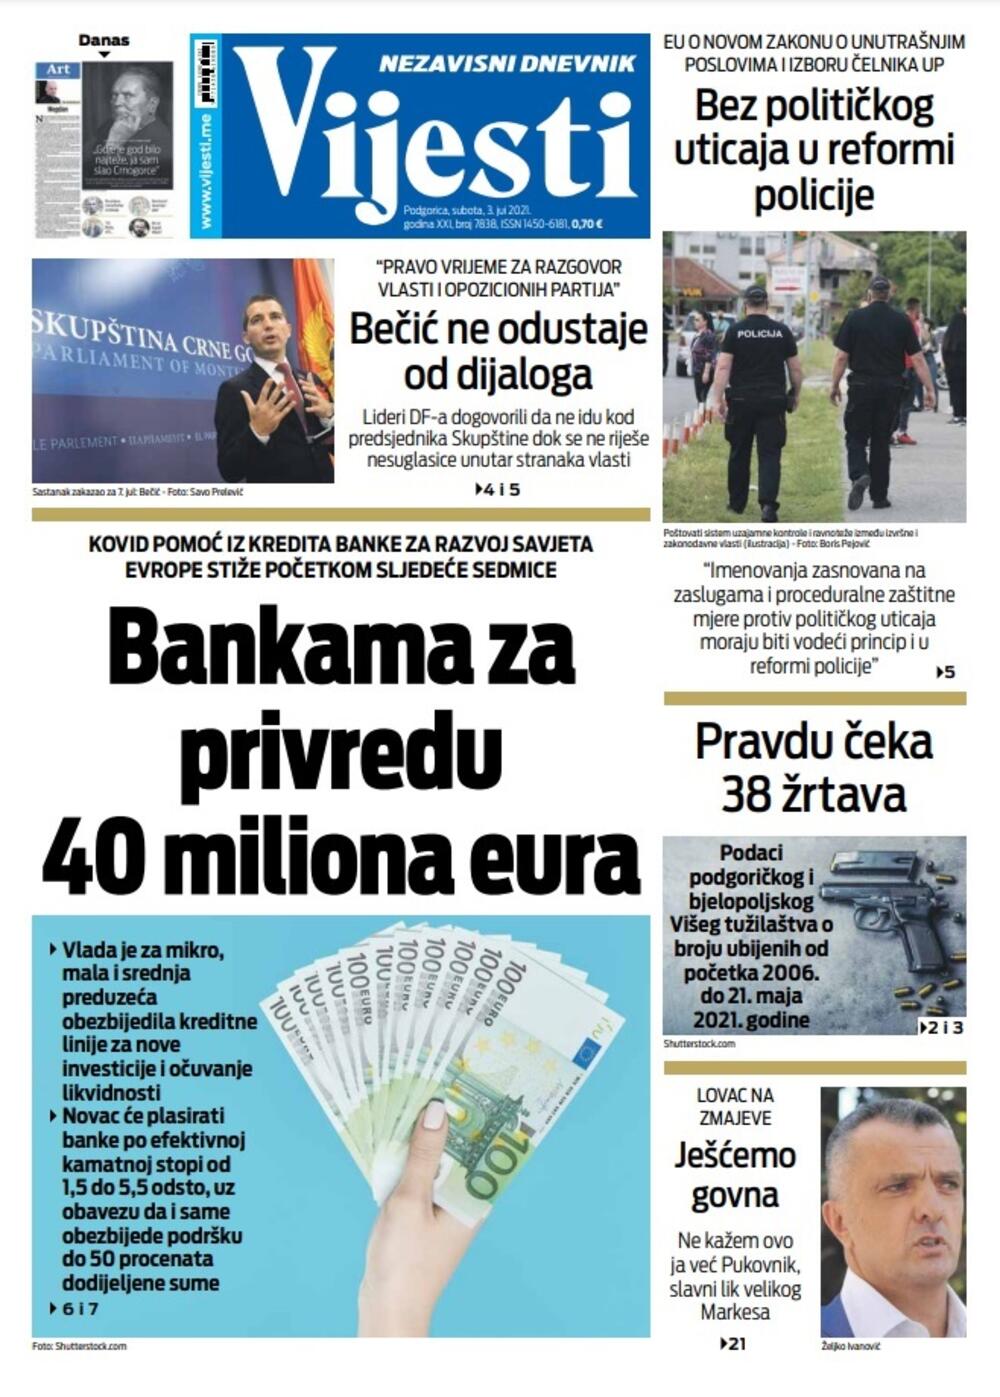 Naslovna strana "Vijesti" za 3.7.2021., Foto: Vijesti